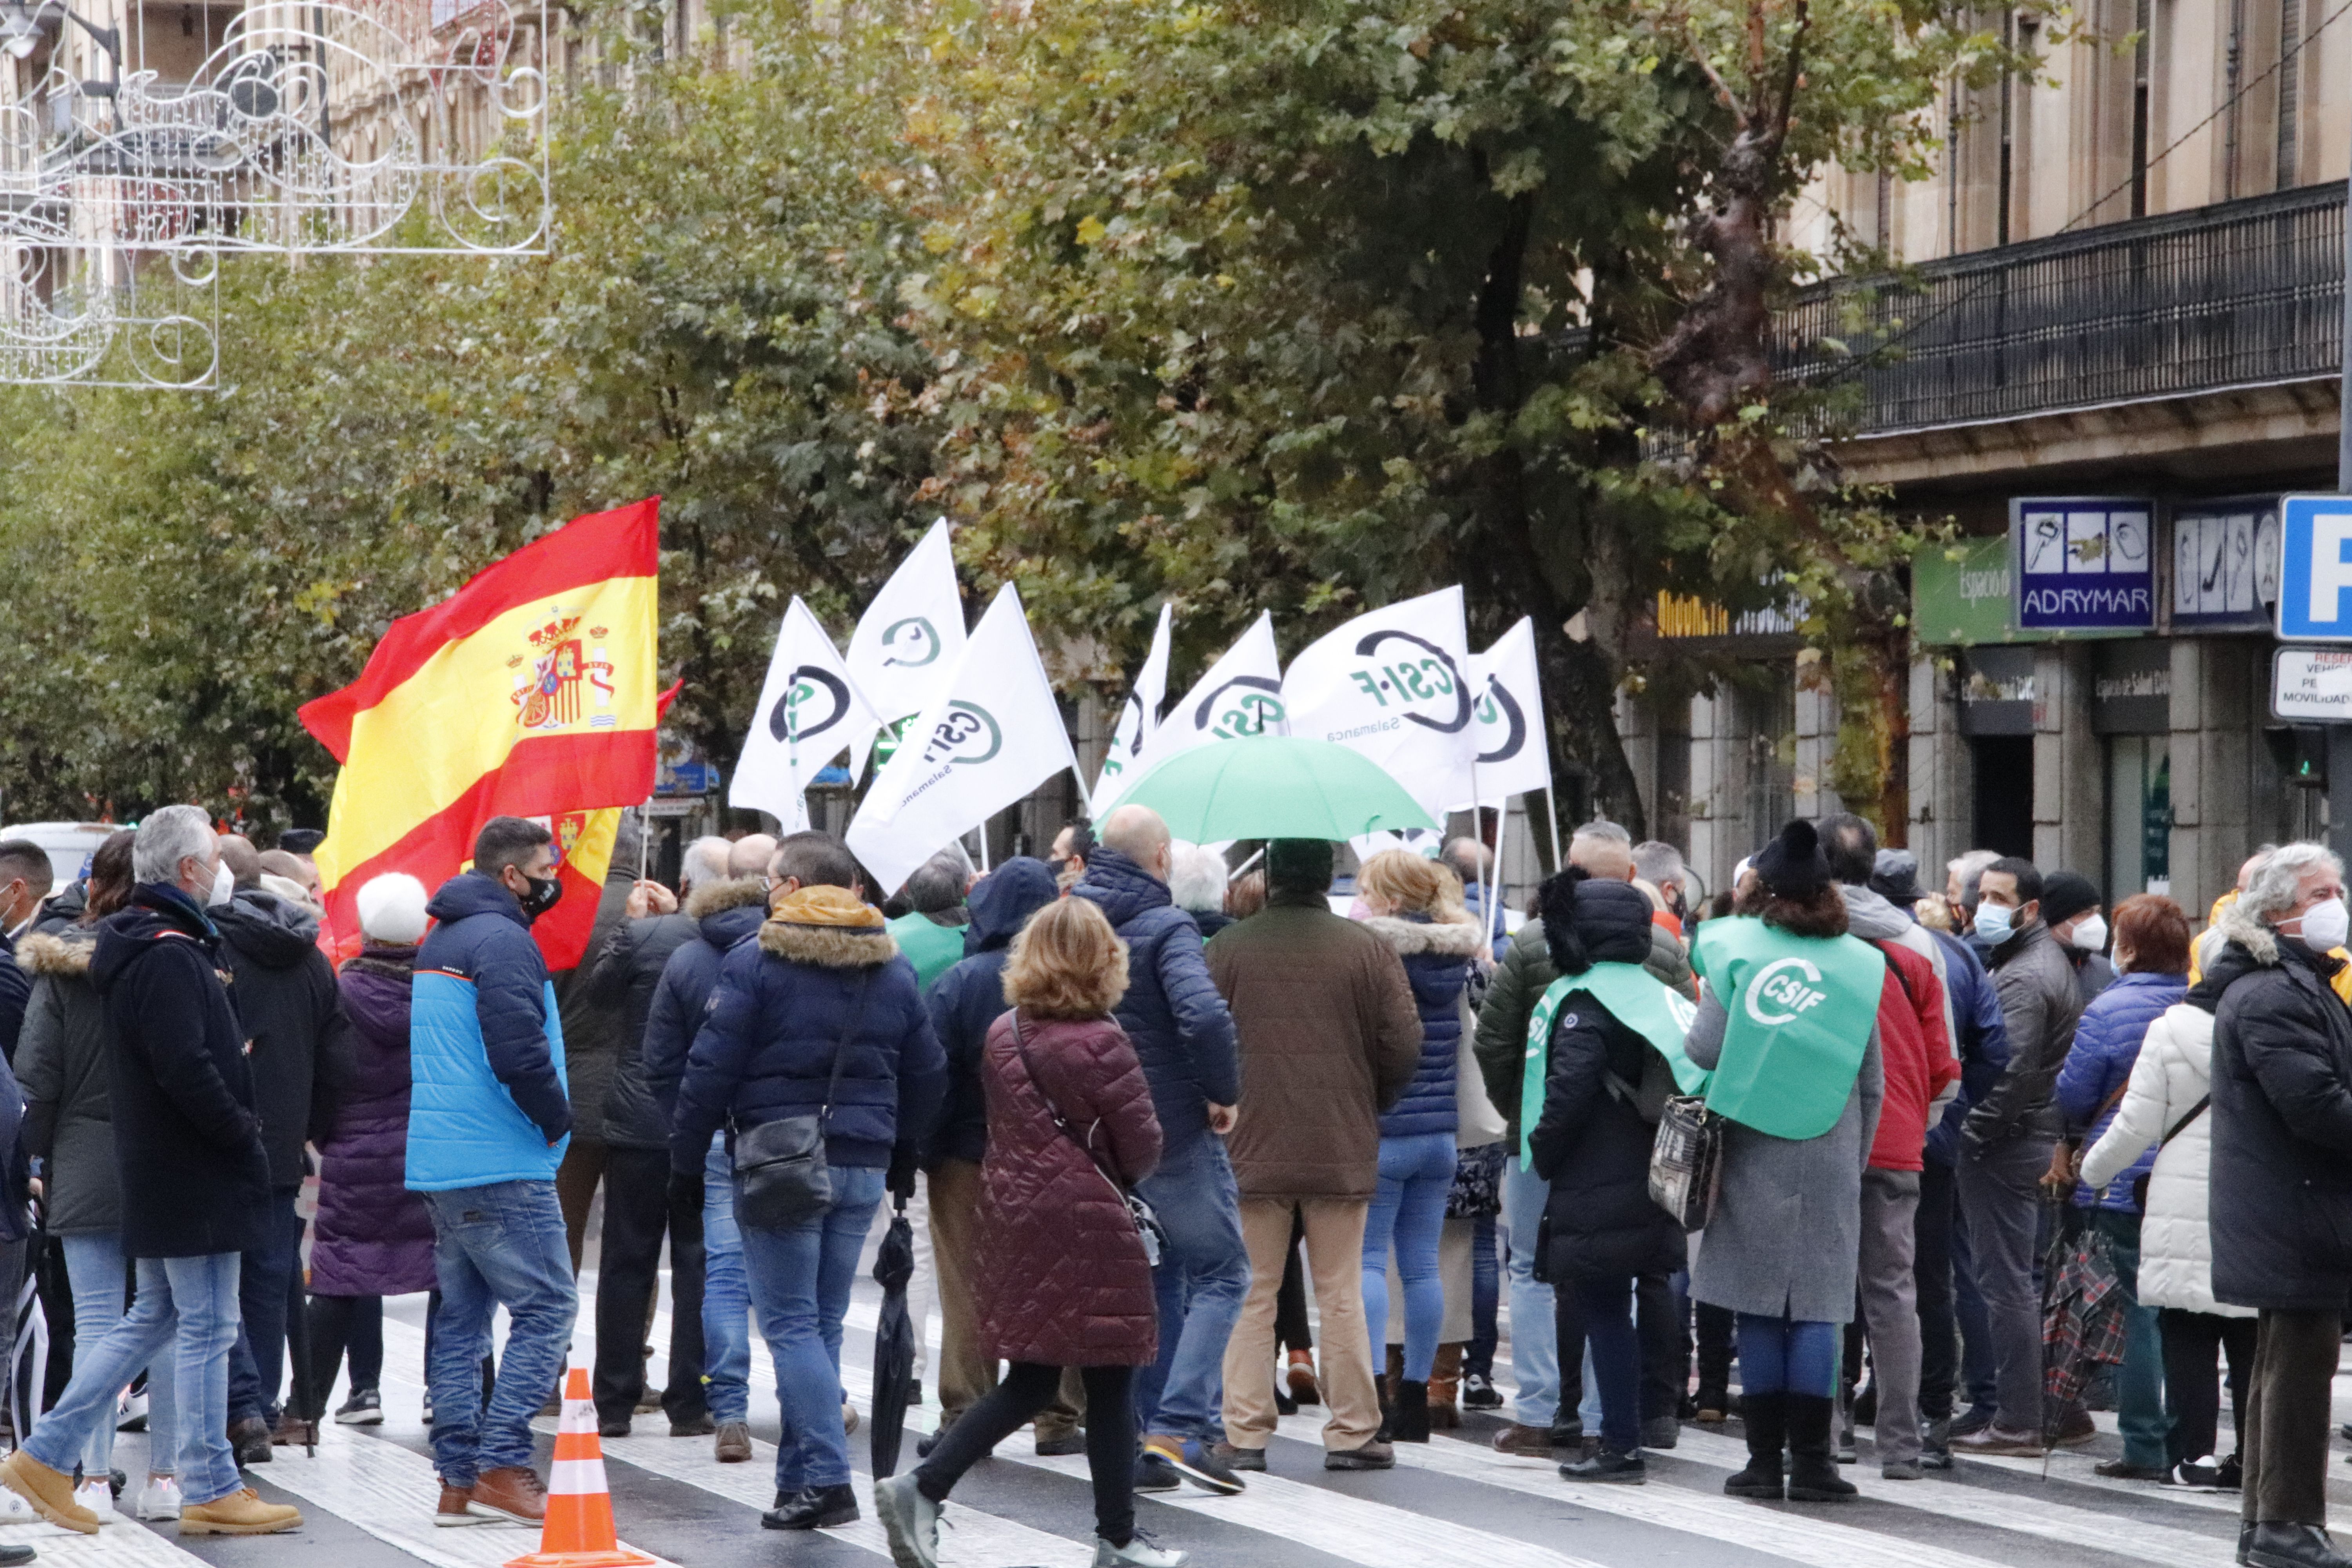 Concentración sindicatos policiales "No a la España insegura"